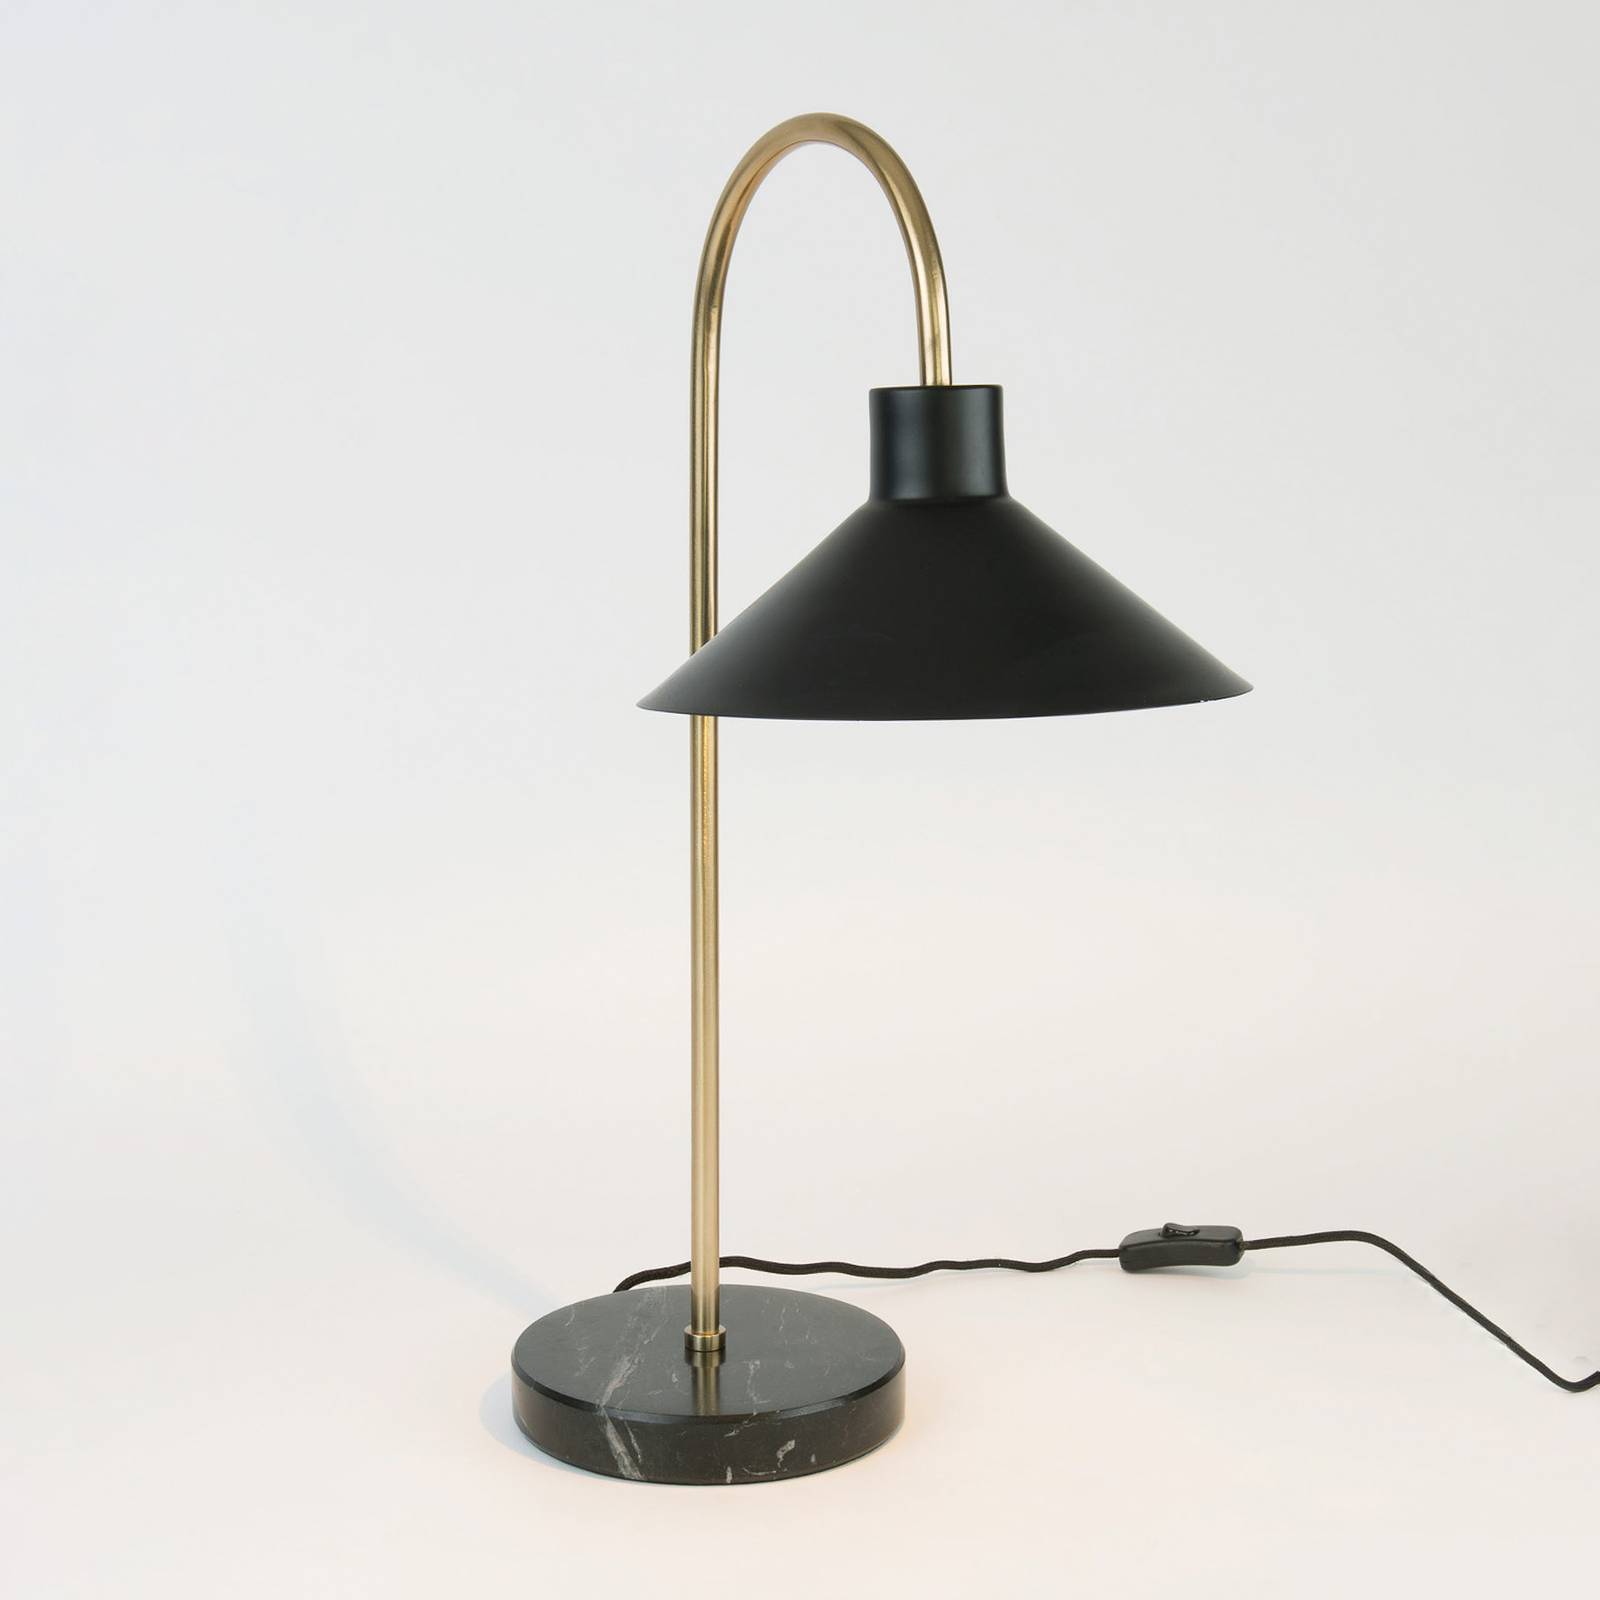 Holländer oktavia asztali lámpa, fekete/arany színű, magasság 58 cm, márvány